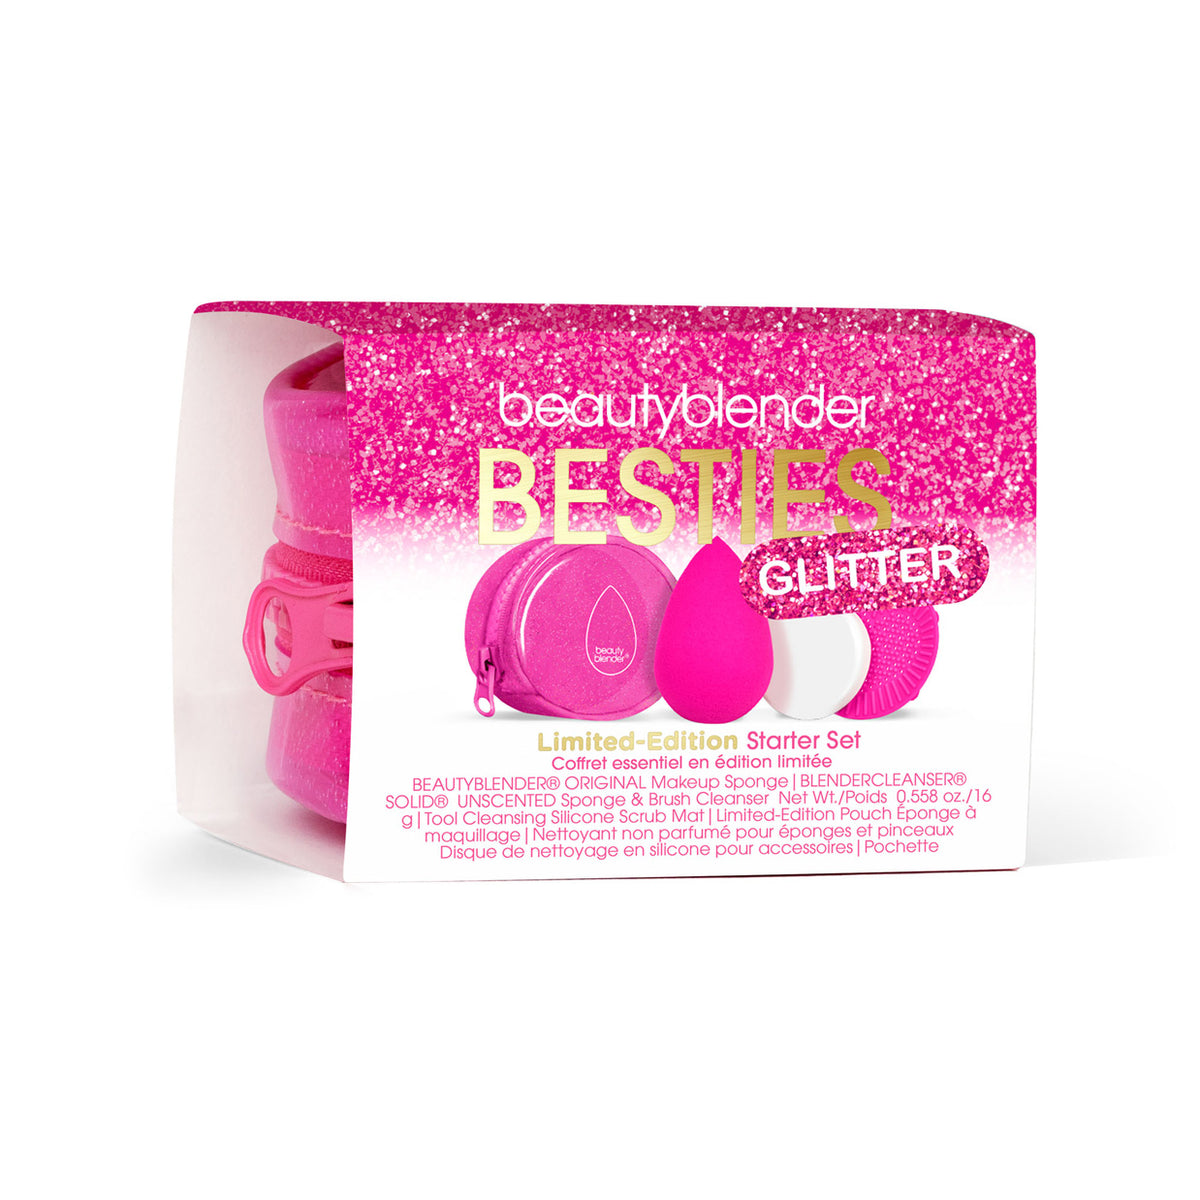 Besties Glitter Blend & Cleanse 4-Piece Starter Set.